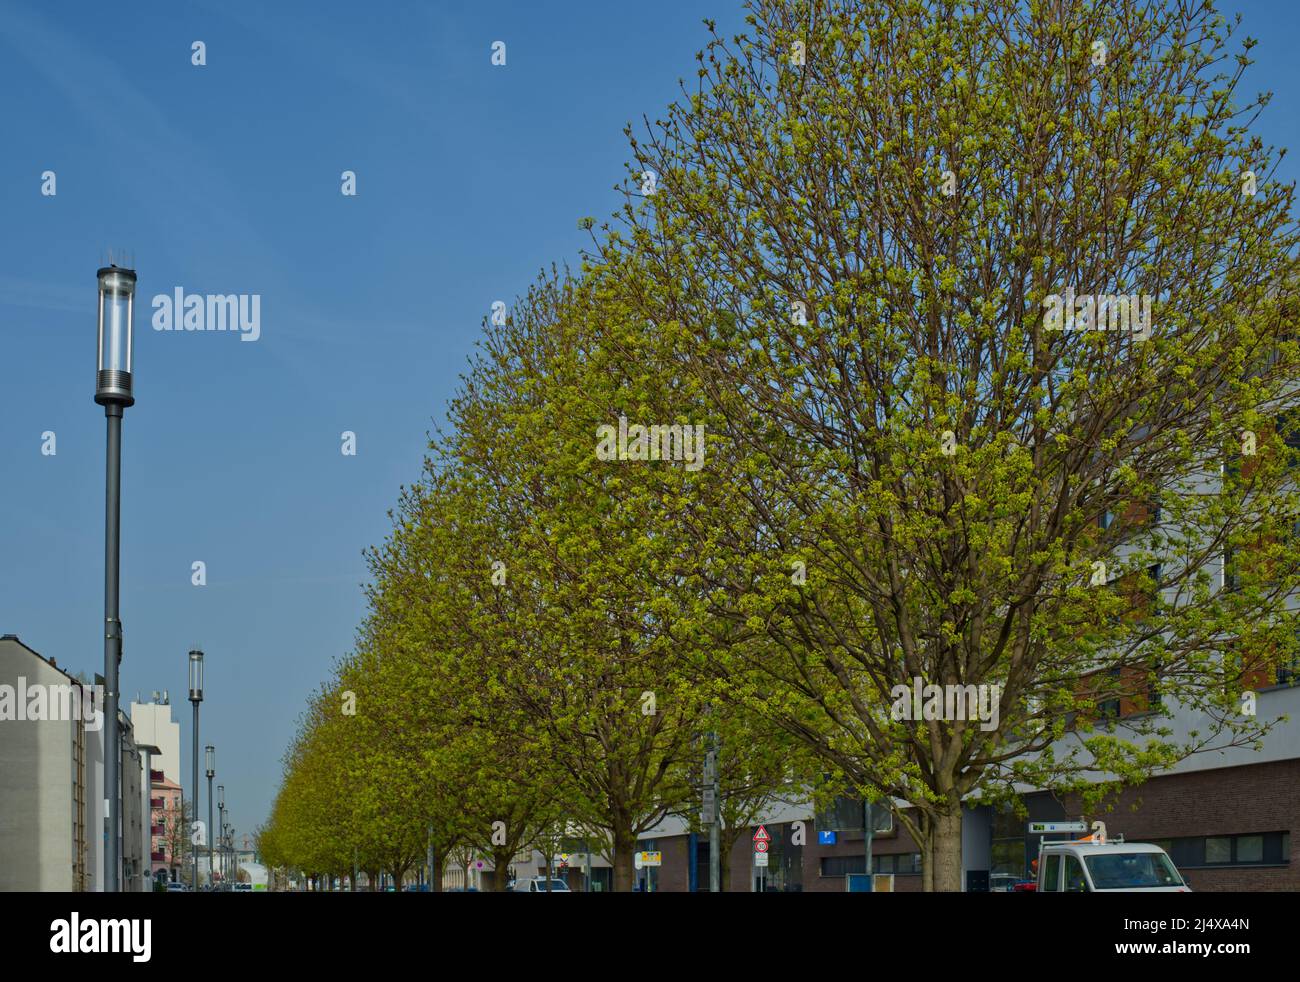 Perspektive einer Reihe von Straßenlaternen auf der linken Seite und frischen grünen Bäumen auf der rechten Seite in einem städtischen Gebiet Stockfoto